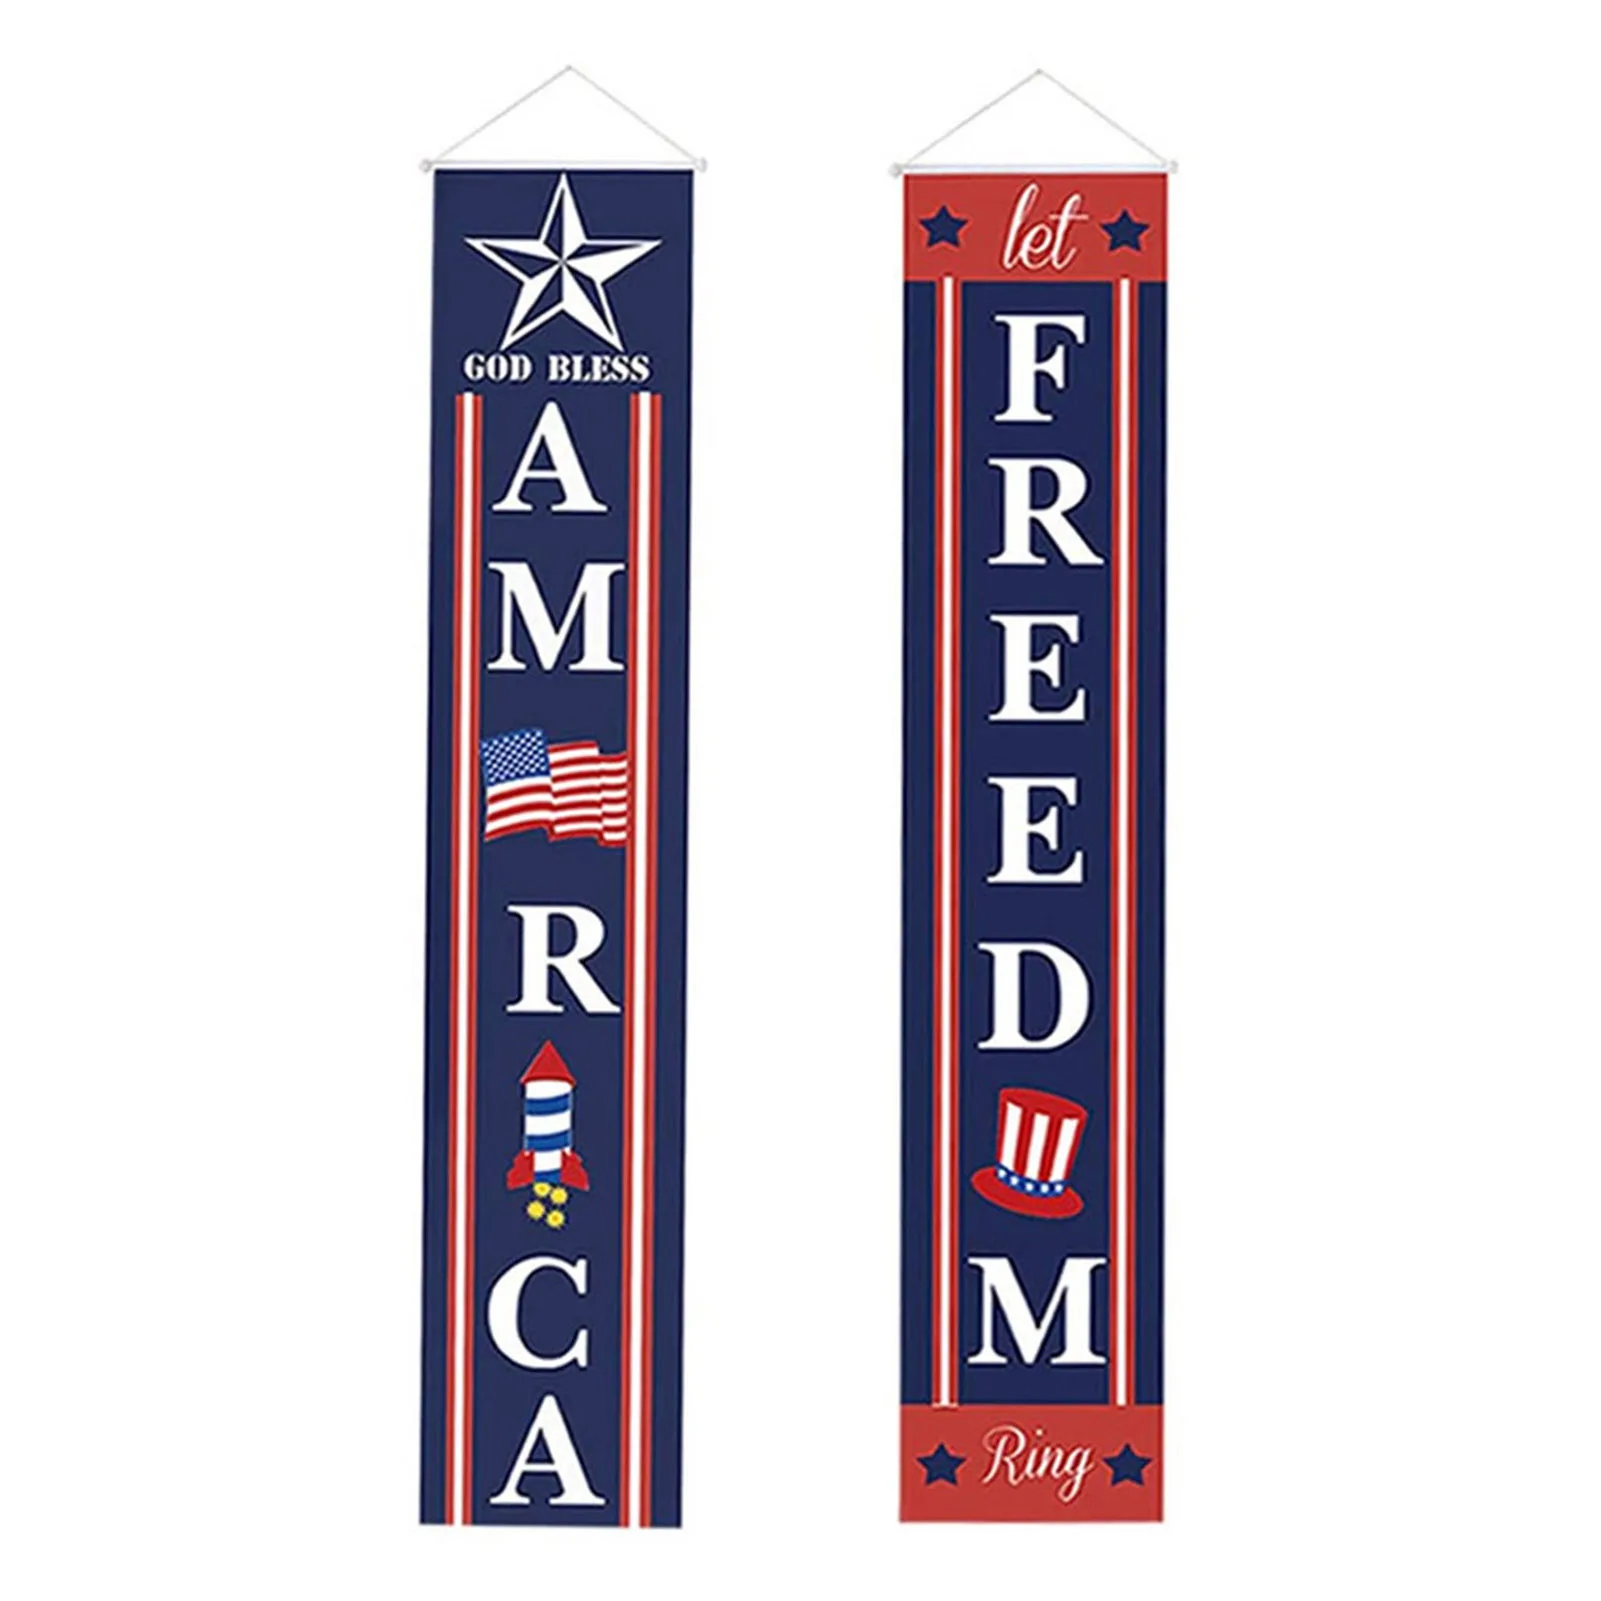 

Американский флаг, знак для крыльца, украшение 4 июля, знак для крыльца «God Bless America» и «Let Freedom ring», баннер на четвертый день